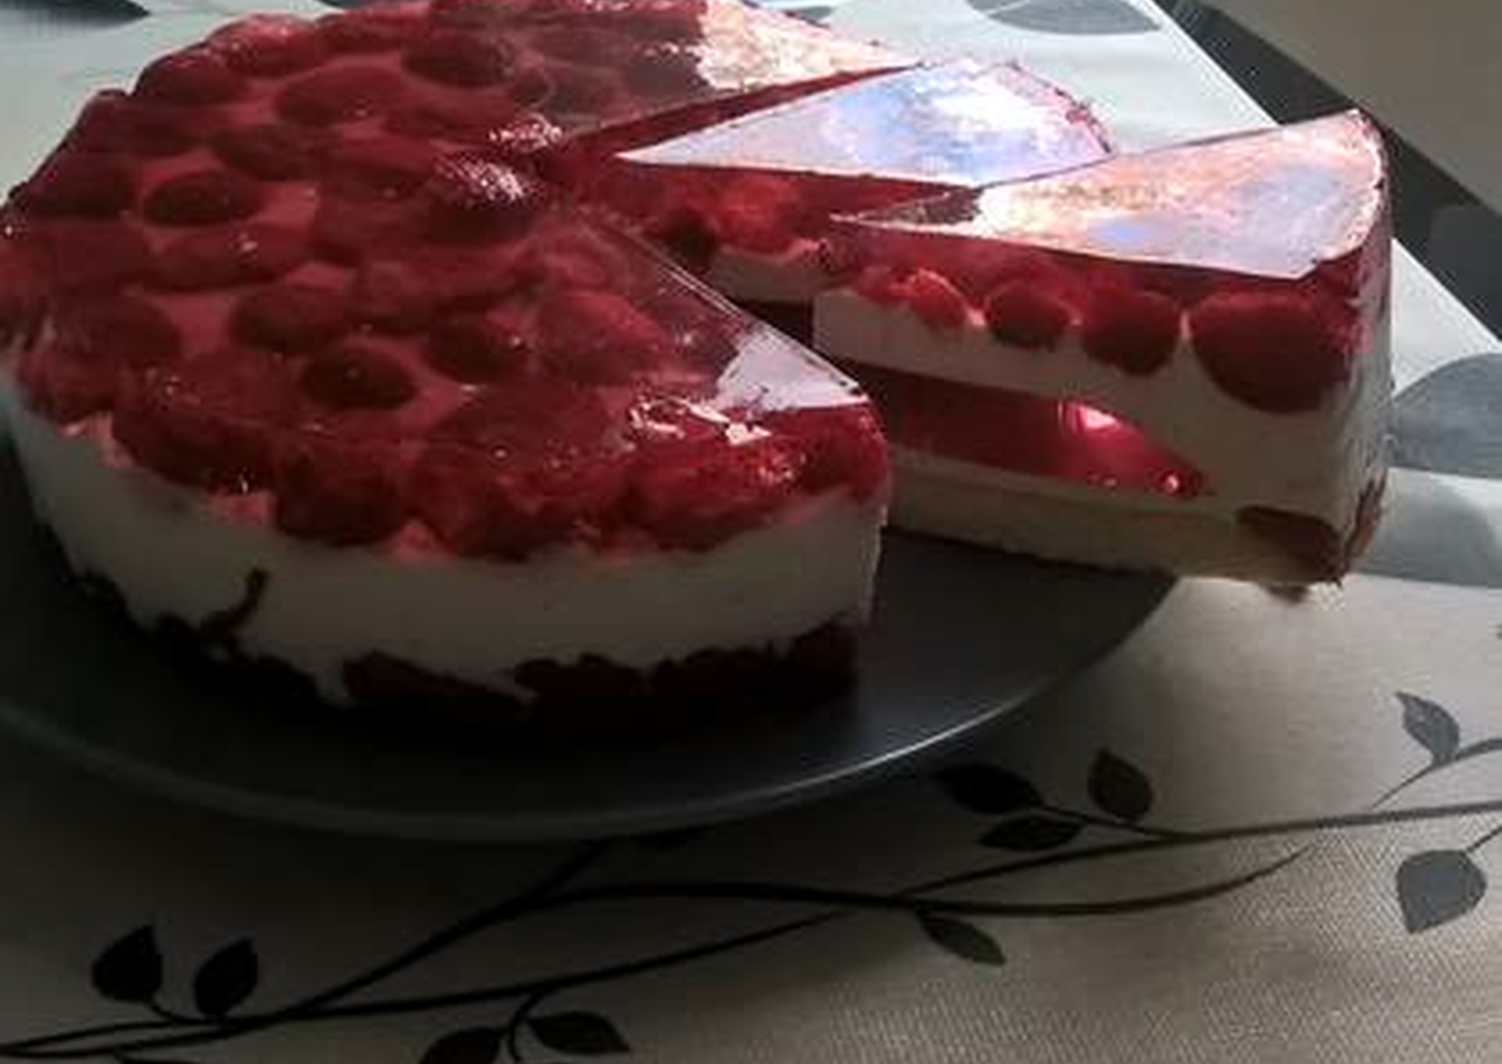 Муссовый торт: пошаговые фото-рецепты с зеркальной глазурью